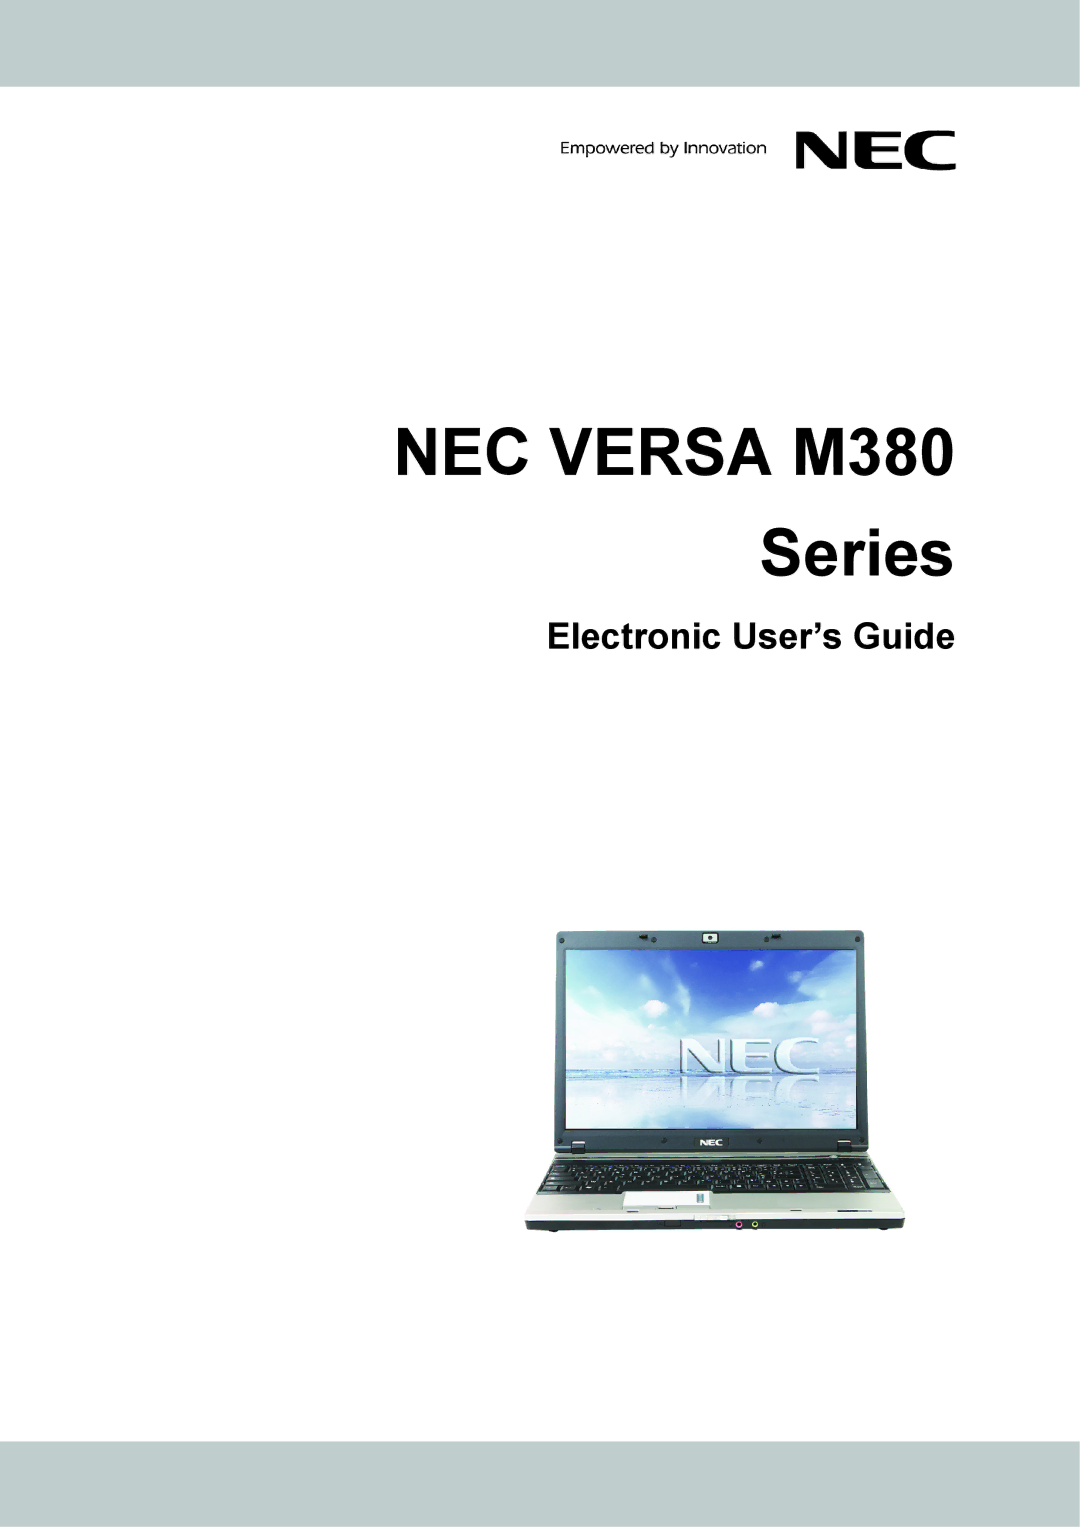 NEC manual NEC Versa M380 Series 